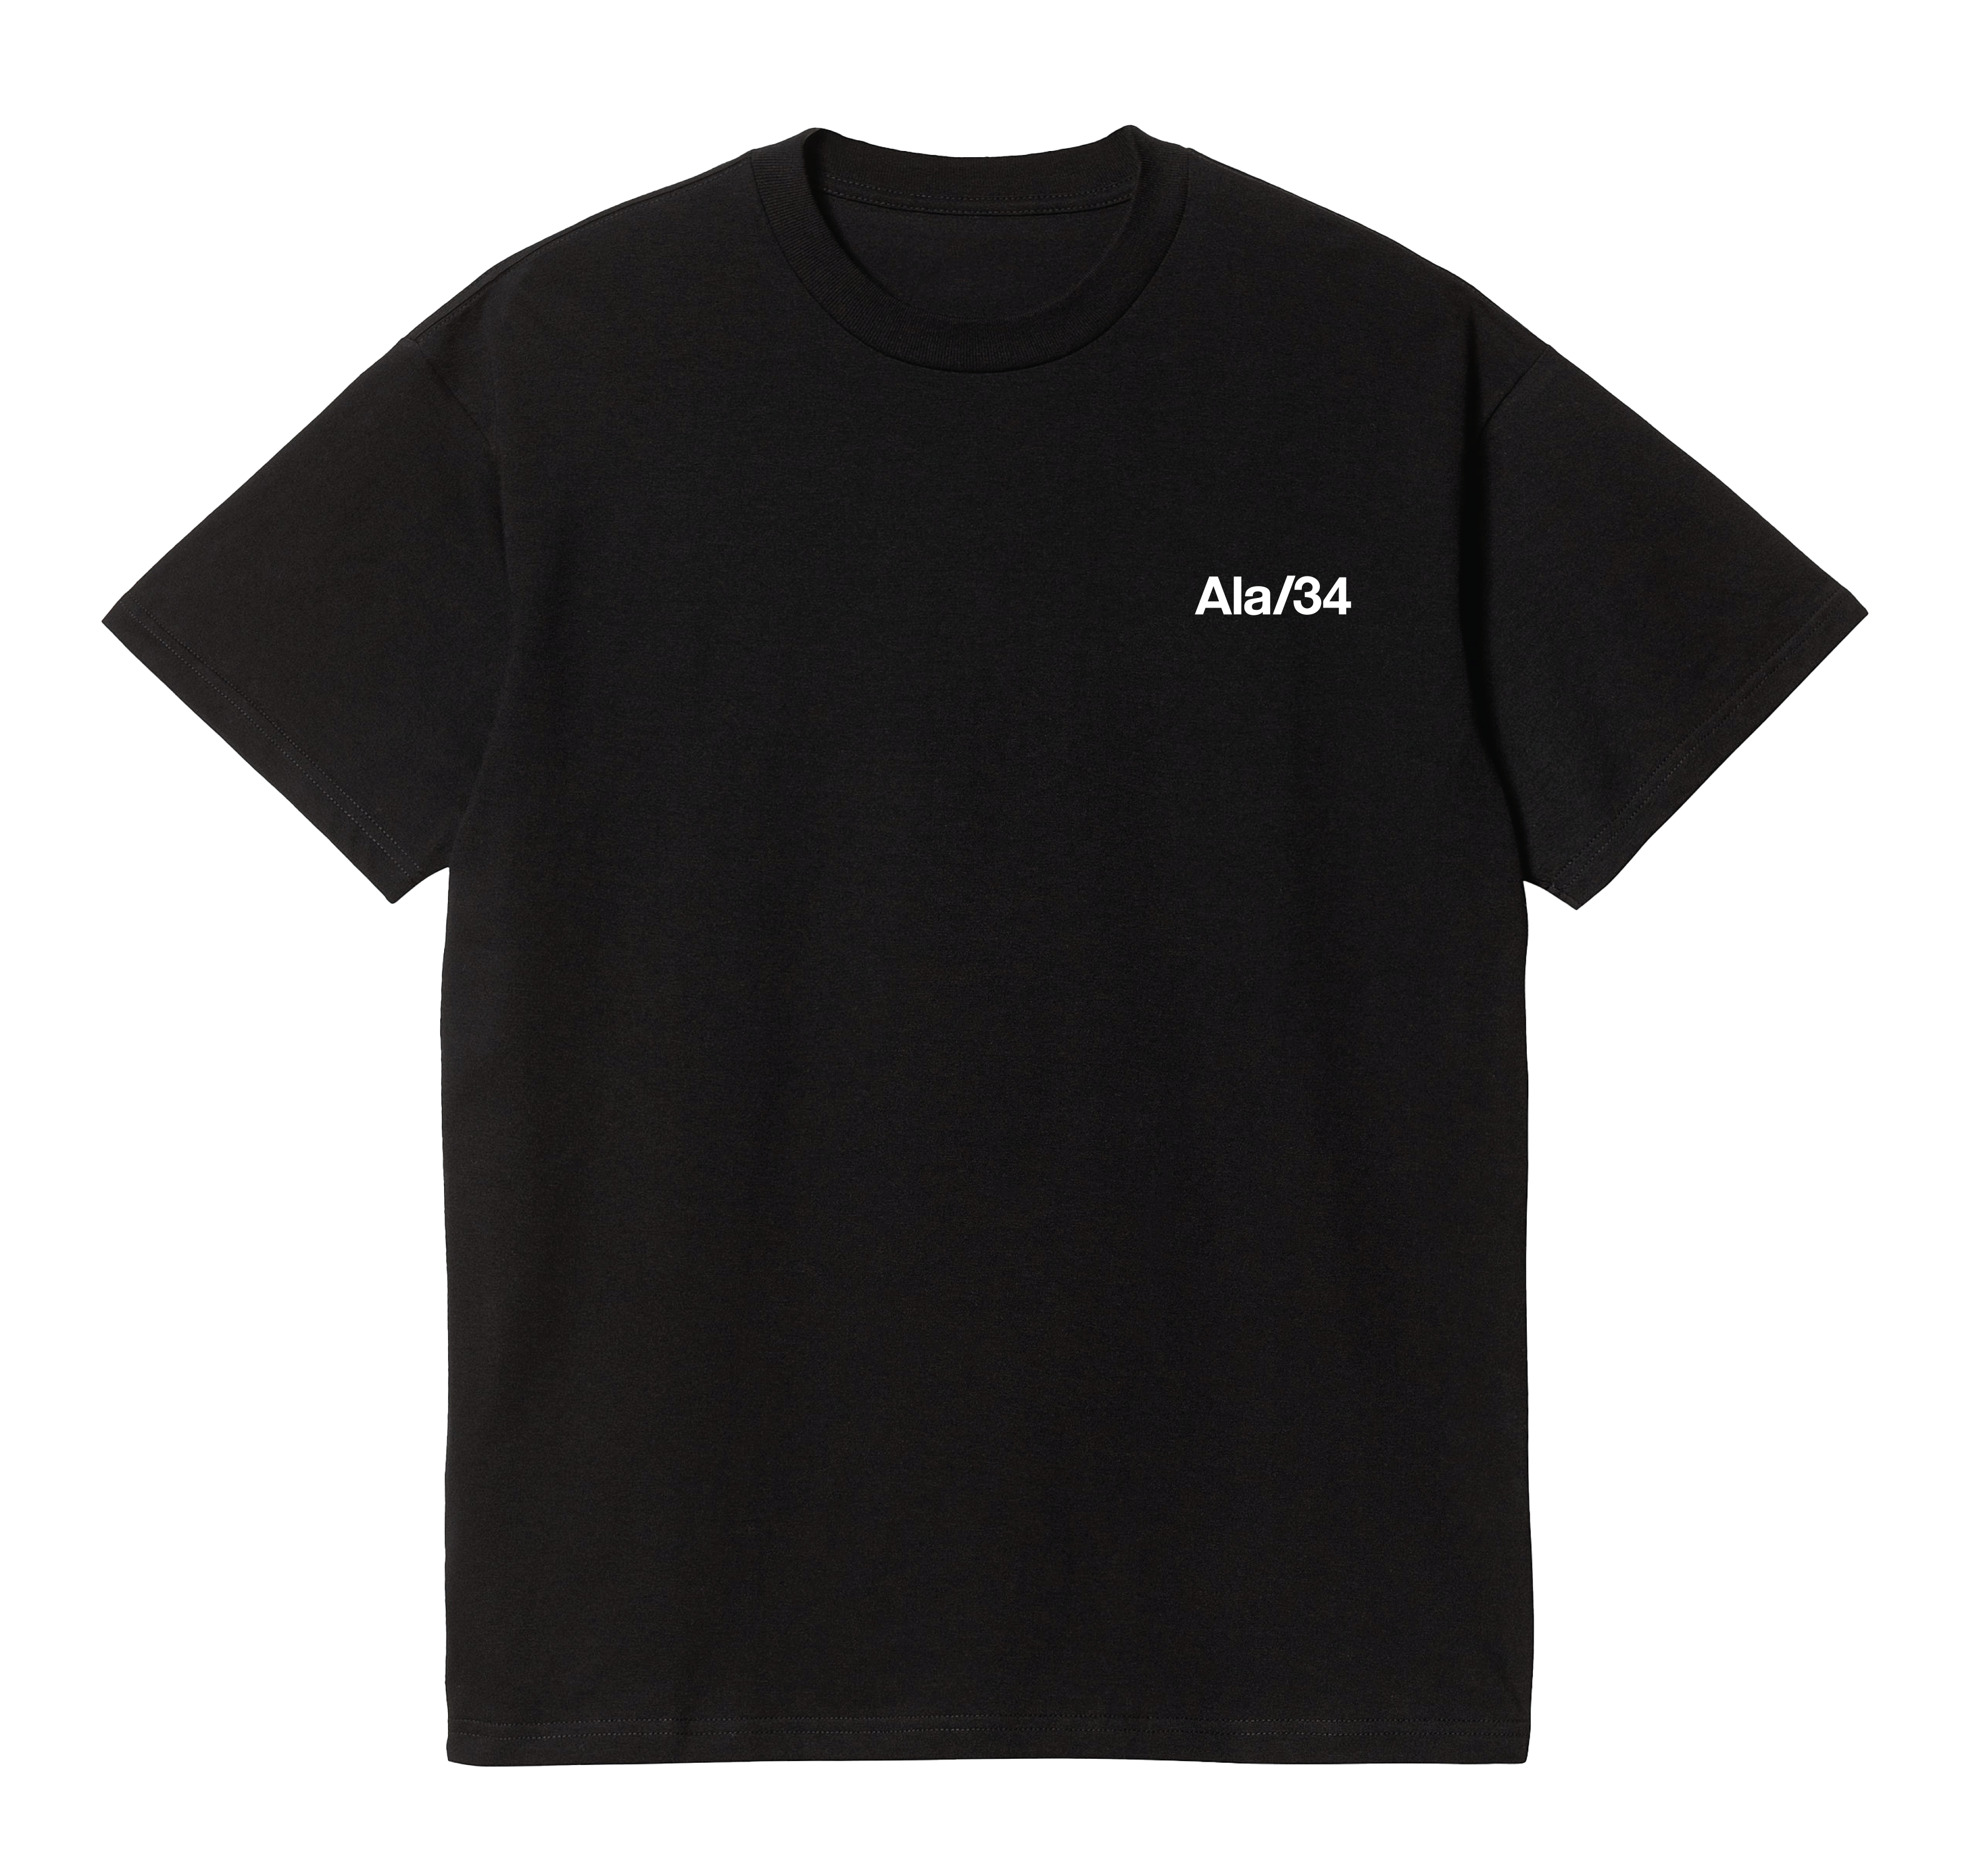 black Slash/34 t-shirt